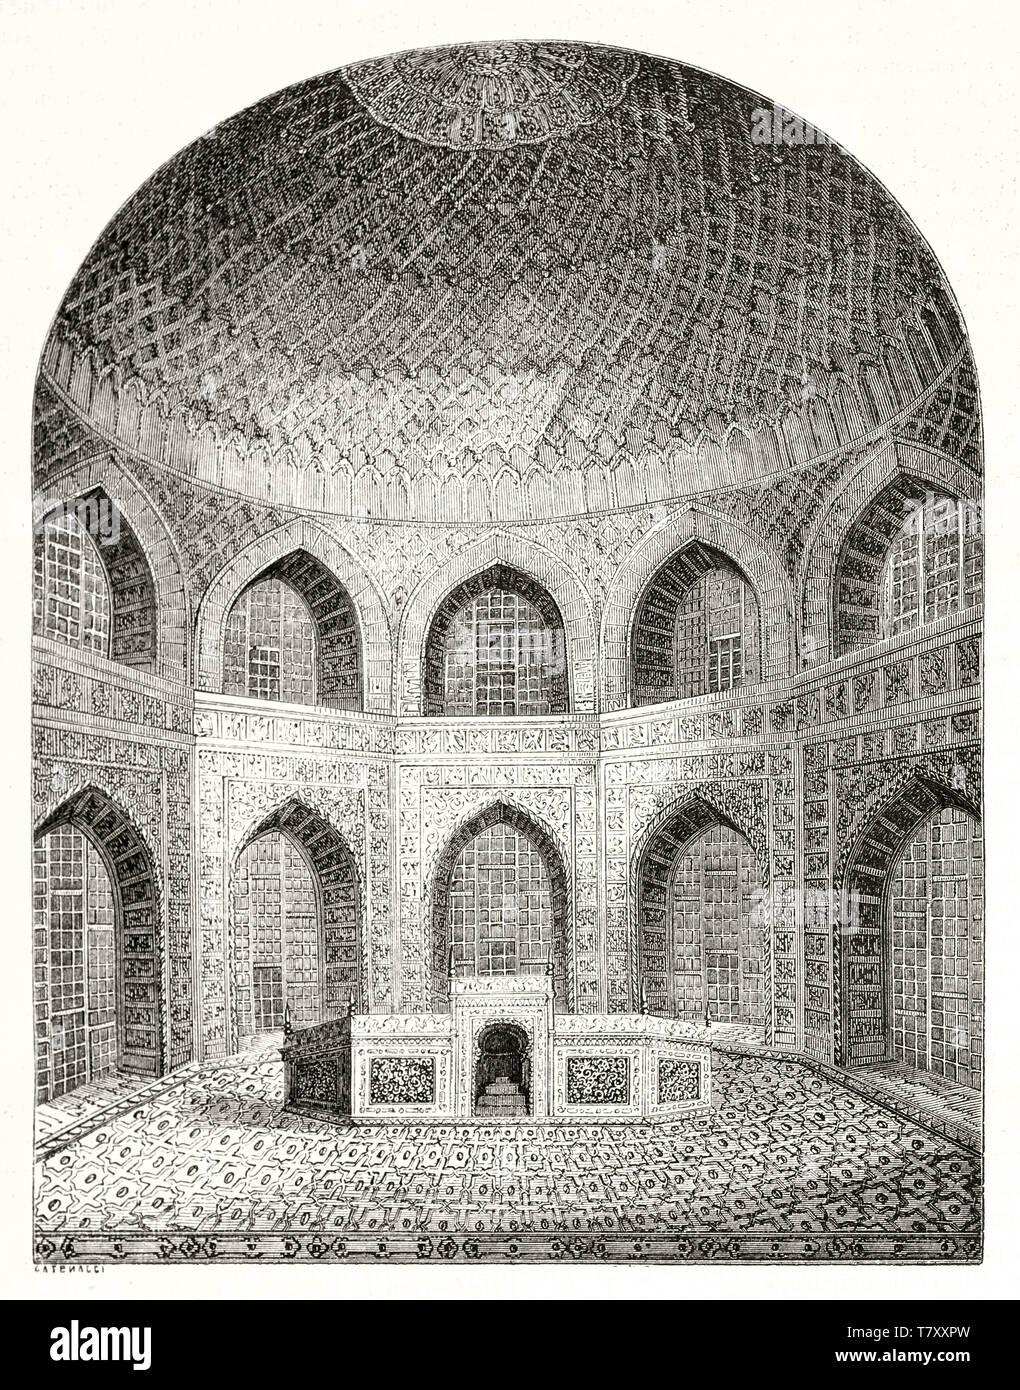 Alte globale Sicht der Taj Mahal achteckigen Zimmer Agra Indien angezeigt in einer Radierung stil Abbildung in einem gewölbten vertikalen Rahmen angeordnet. Durch Catenacci publ. Auf Magasin Pittoresque Paris-1848 Stockfoto